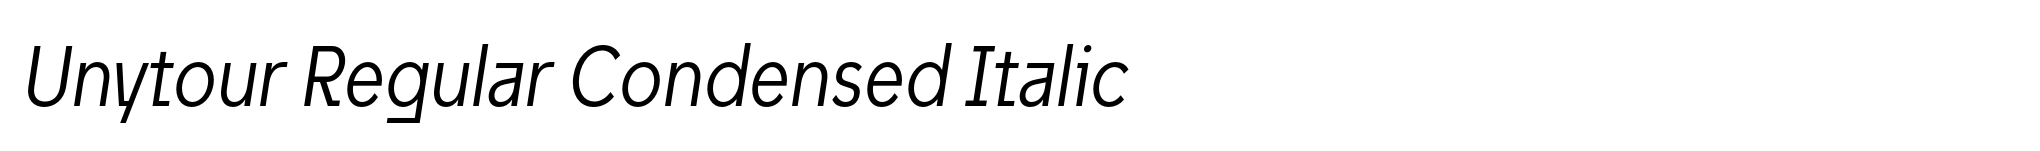 Unytour Regular Condensed Italic image